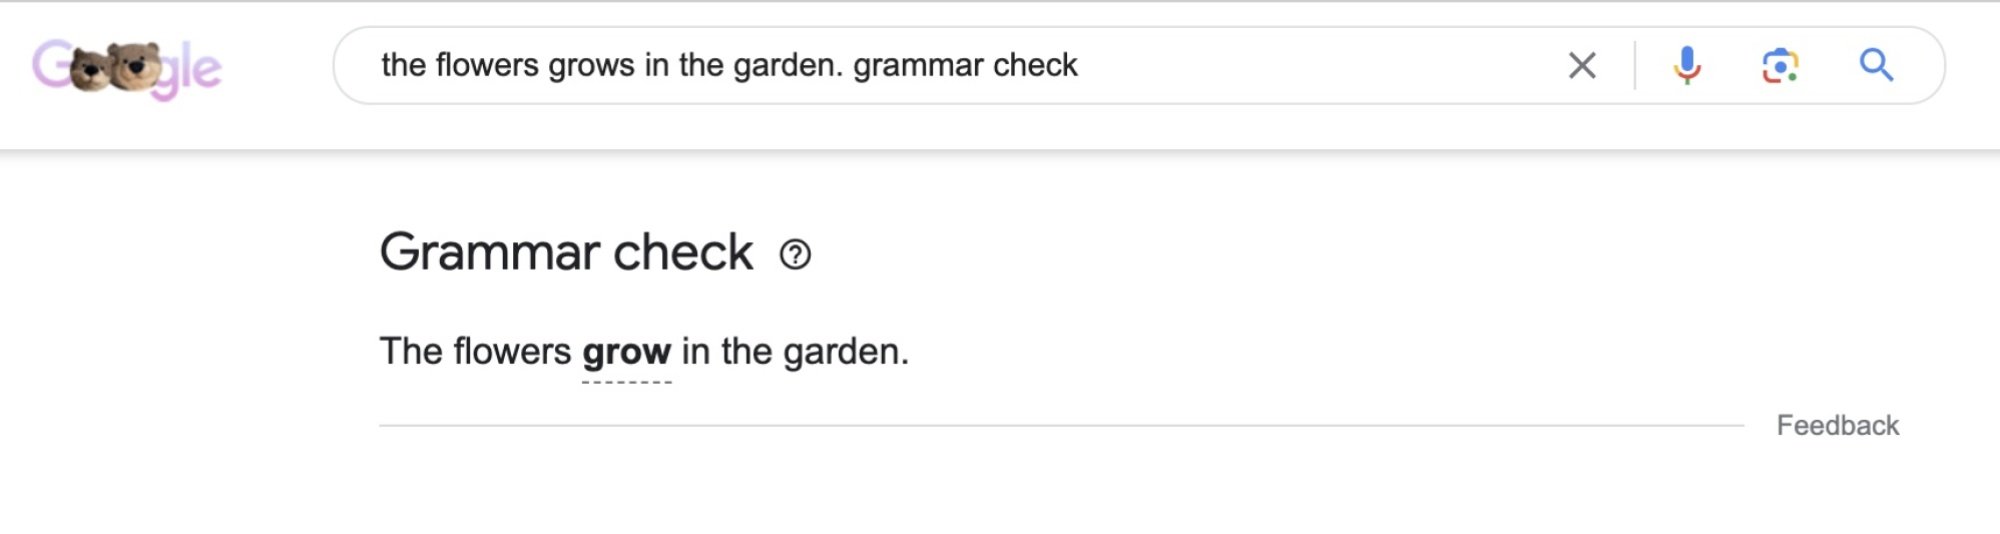 Google'da bir gramer kontrolü örneği. 